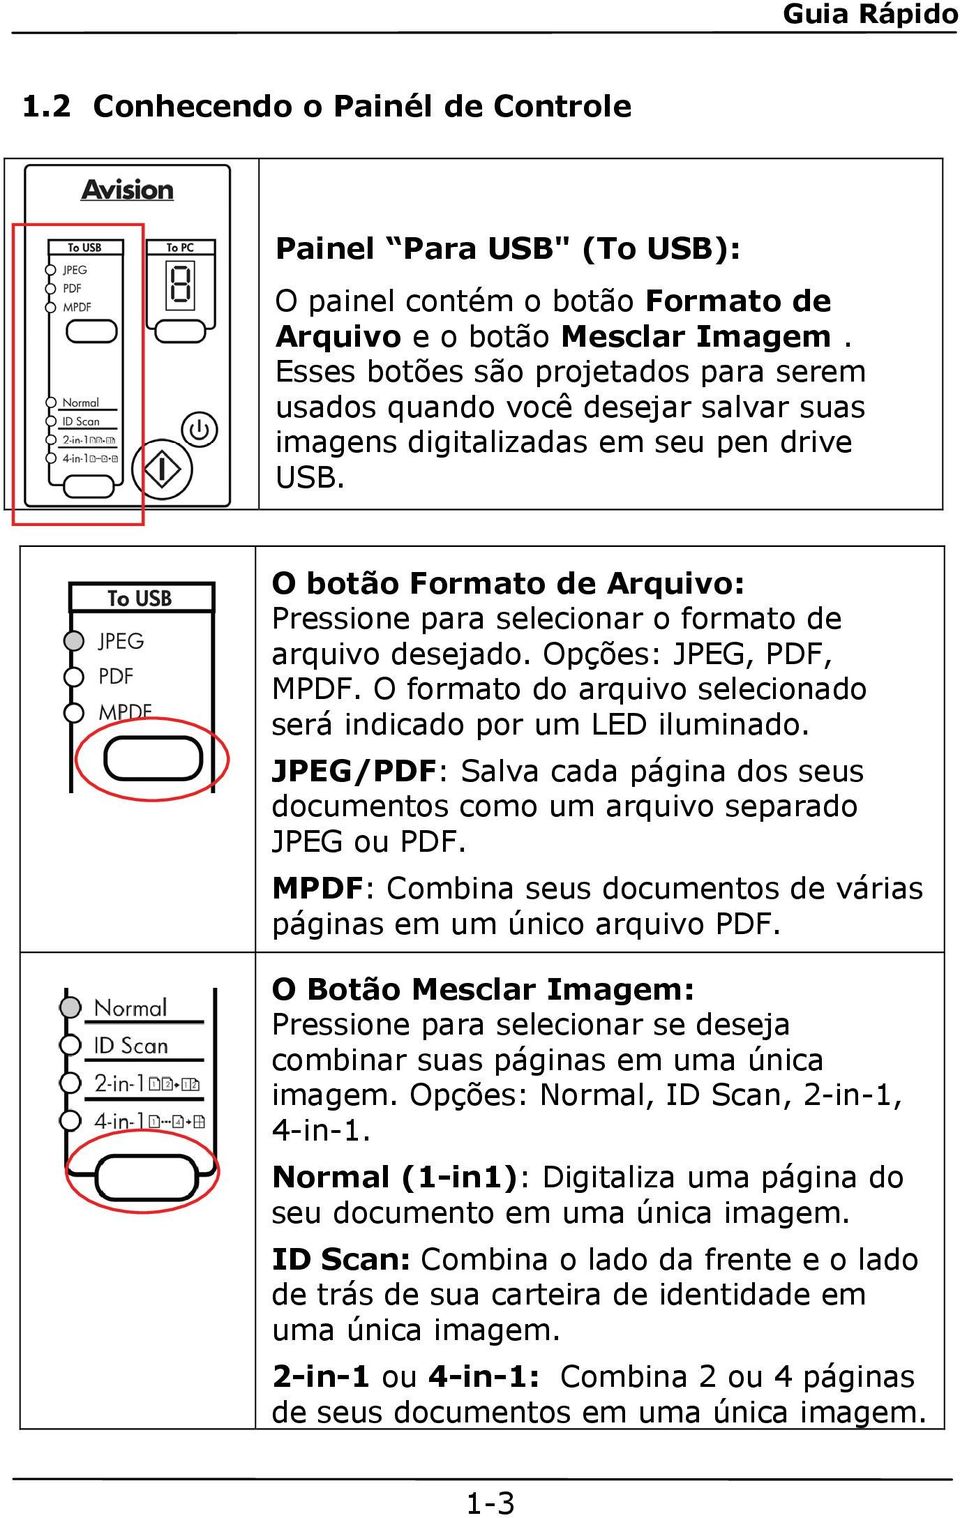 O botão Formato de Arquivo: Pressione para selecionar o formato de arquivo desejado. Opções: JPEG, PDF, MPDF. O formato do arquivo selecionado será indicado por um LED iluminado.